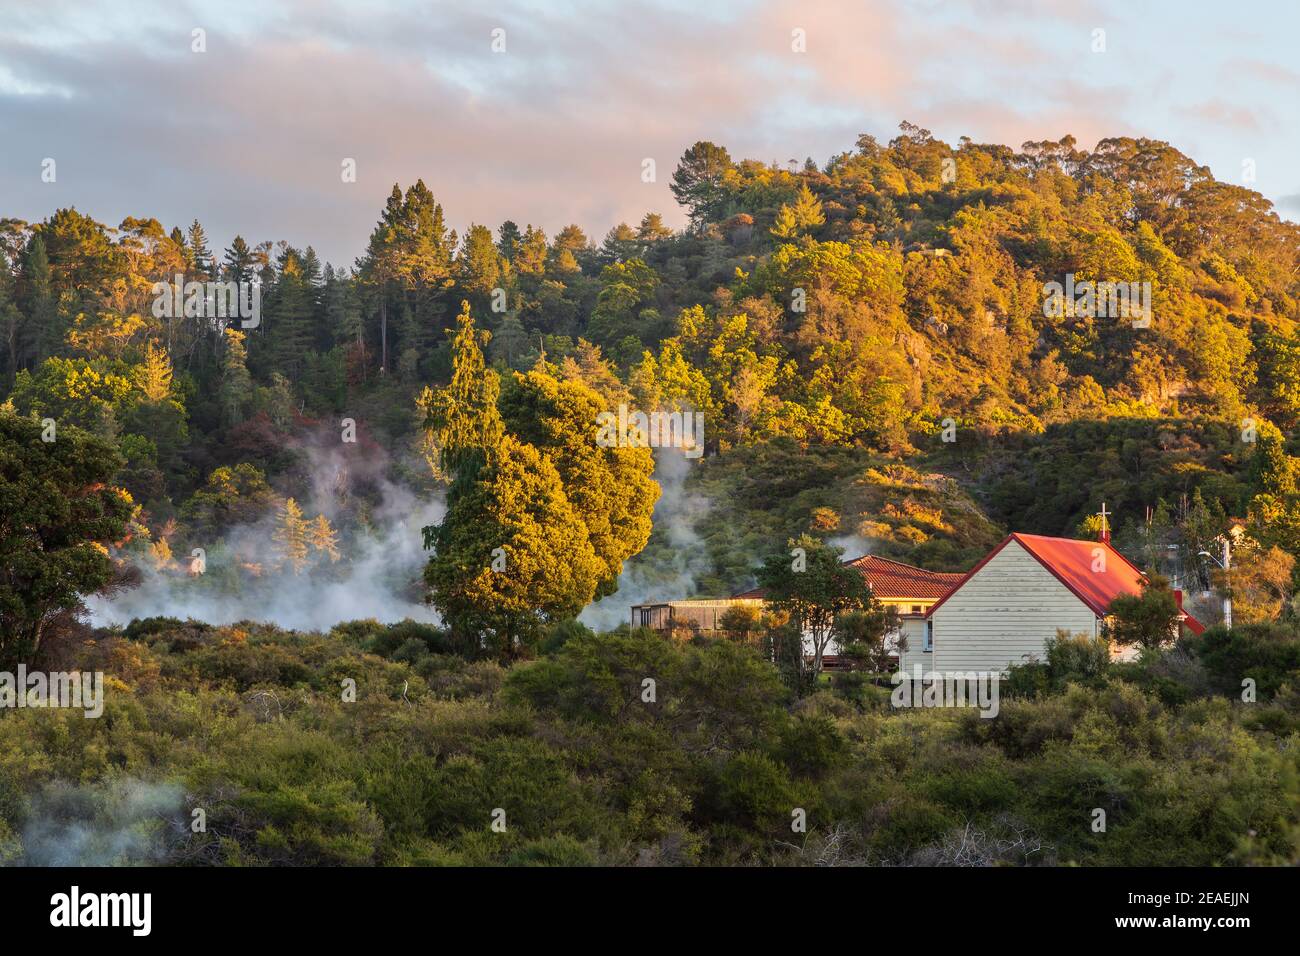 La vapeur s'élève des sources thermales géothermiques dans la forêt du village de Whakarewarewa, Rotorua, Nouvelle-Zélande Banque D'Images